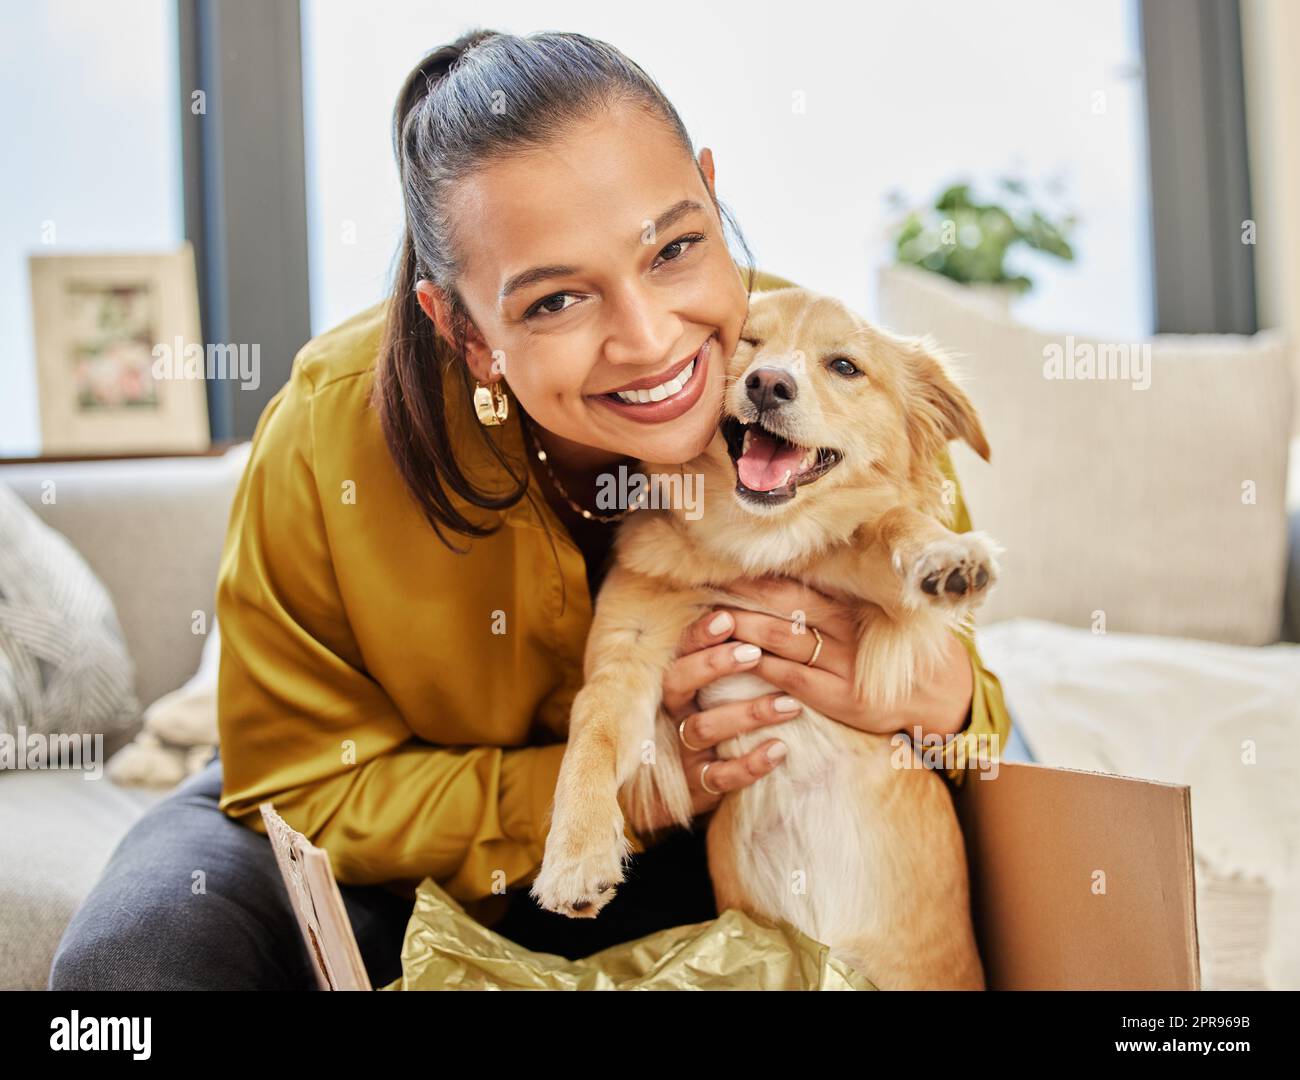 Regardez qui a trouvé une nouvelle maison. Une jeune femme assise à la maison avec un adorable petit chien. Banque D'Images